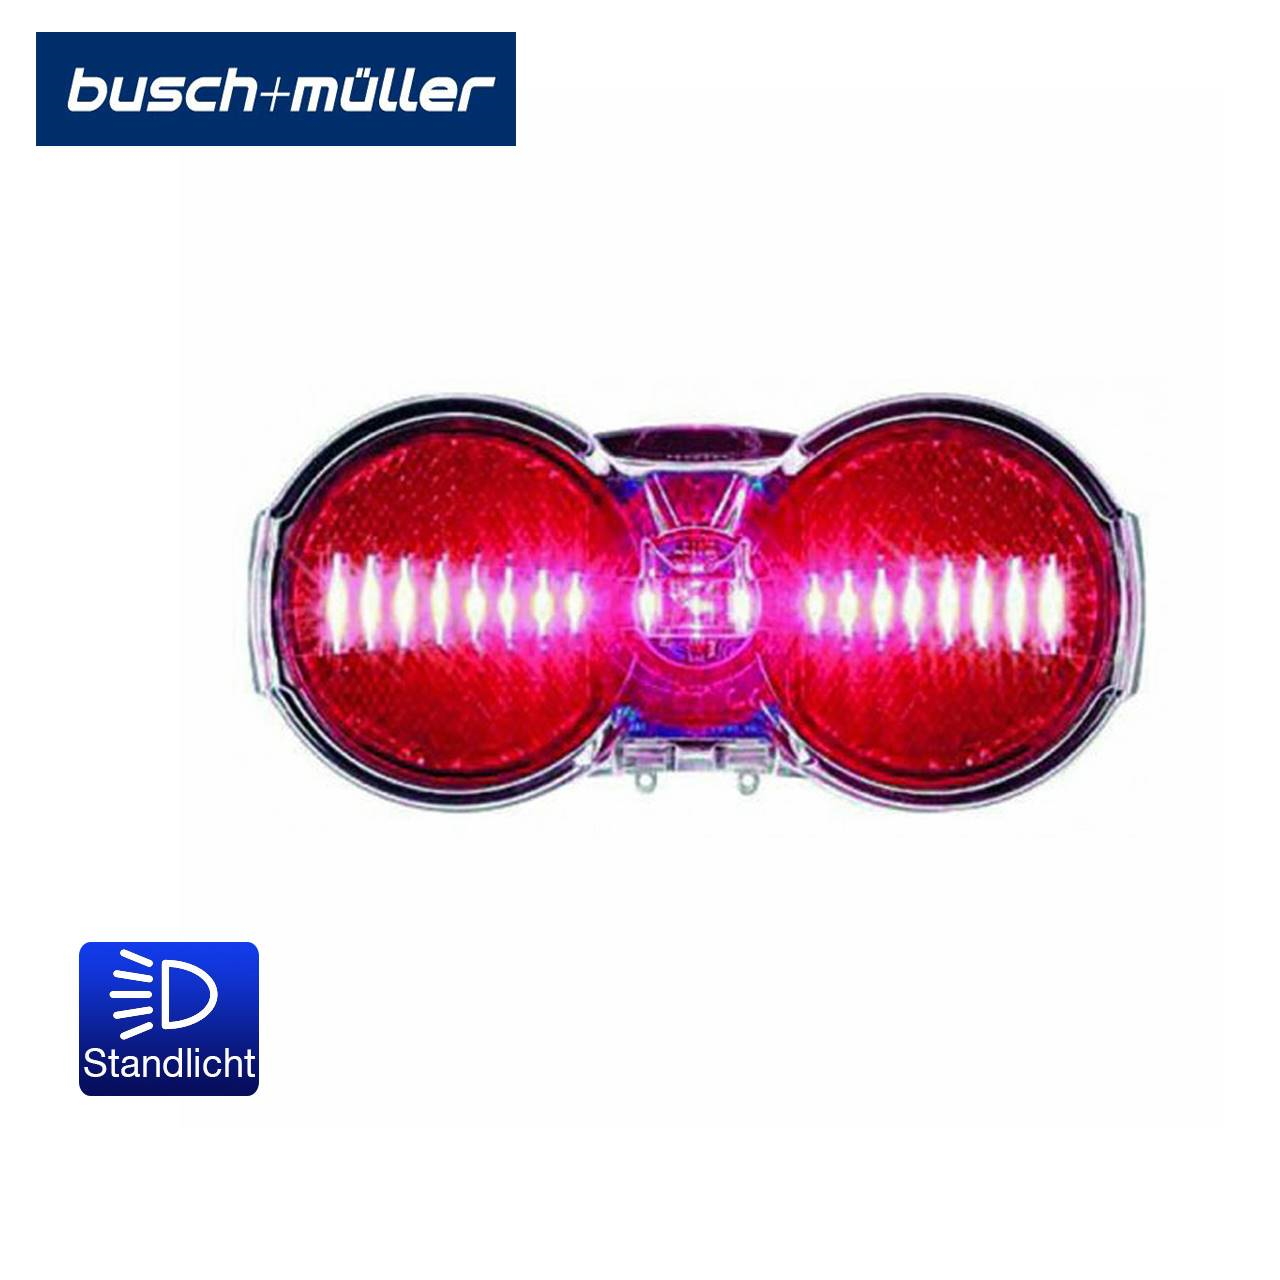 Busch & Müller Fahrrad-Rücklicht Toplight Flat S plus mit Standlicht